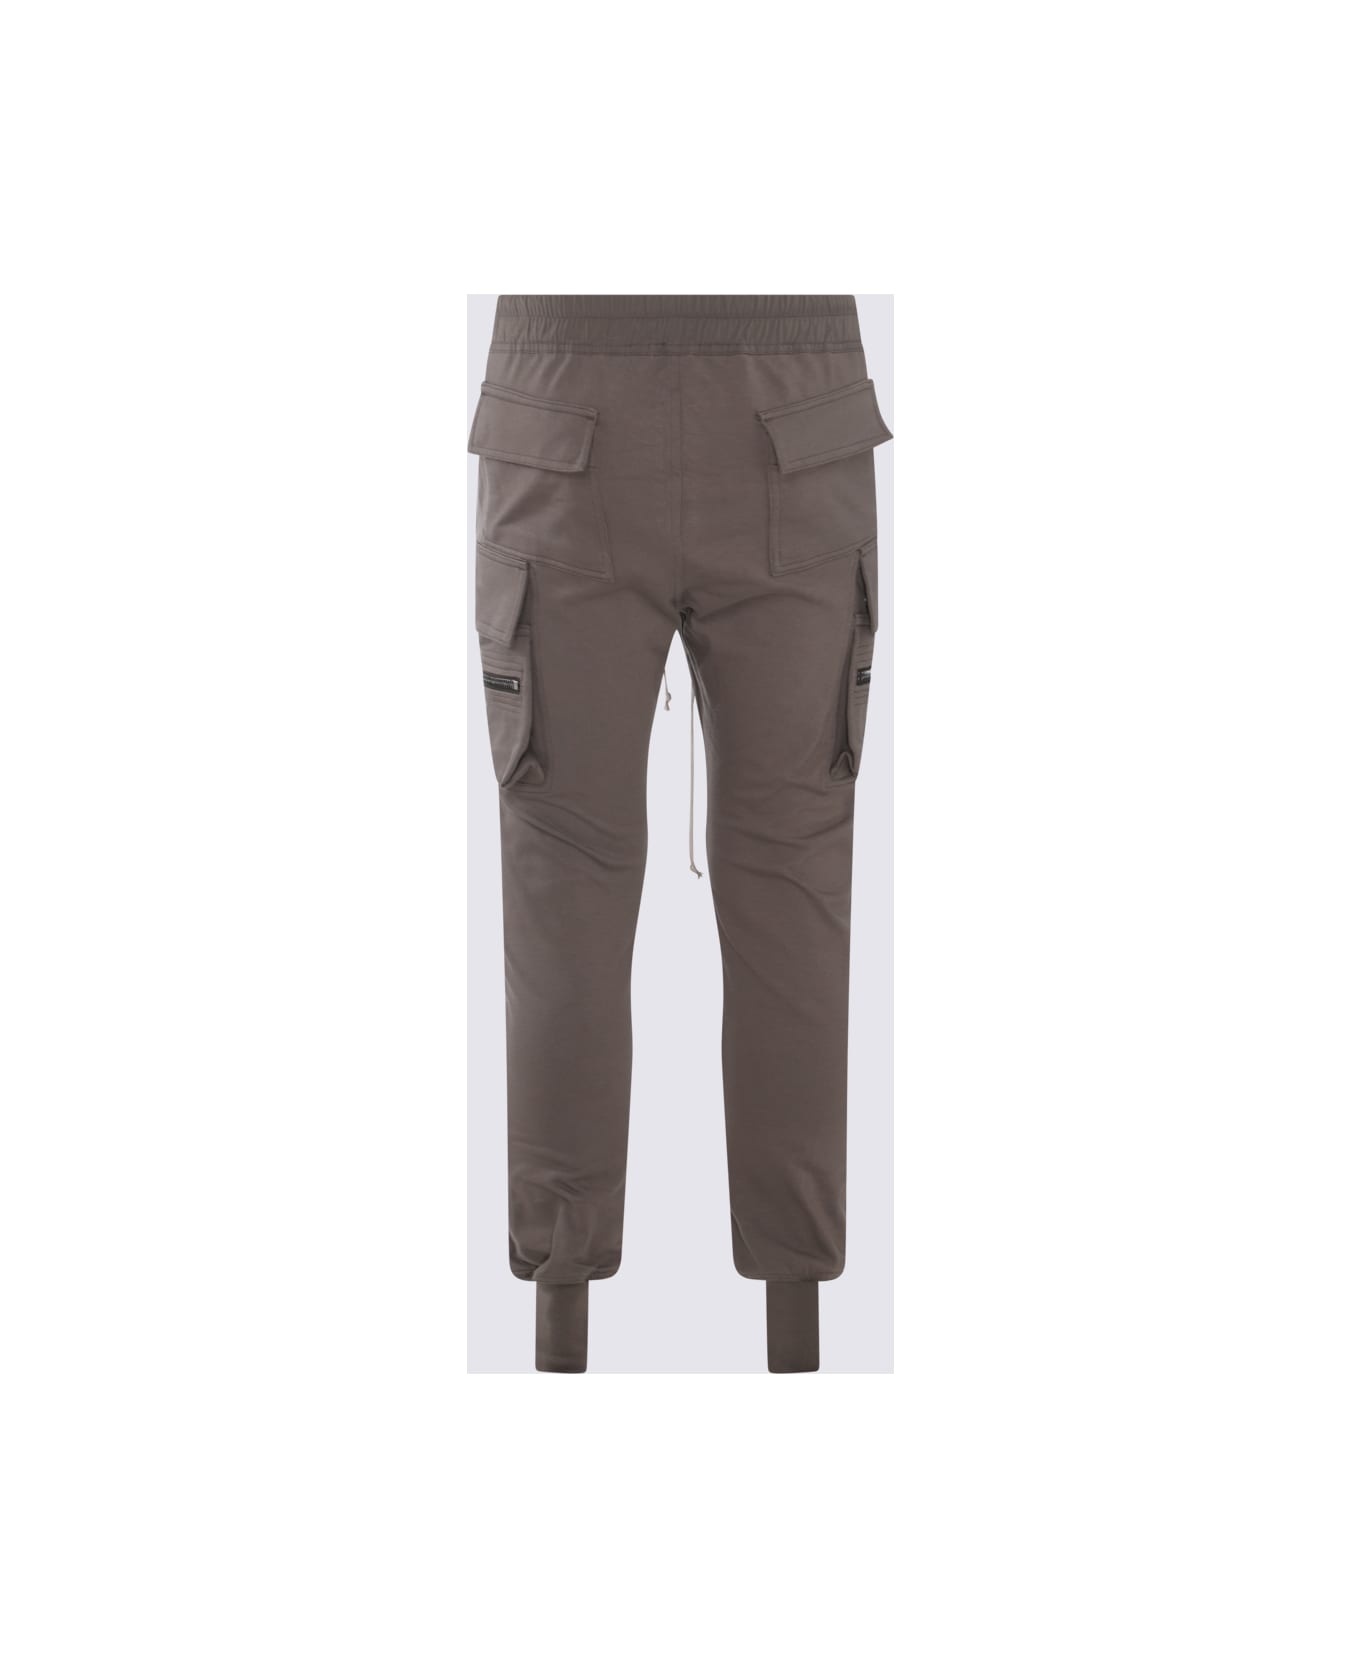 Dust Brown Cotton Pants - 2